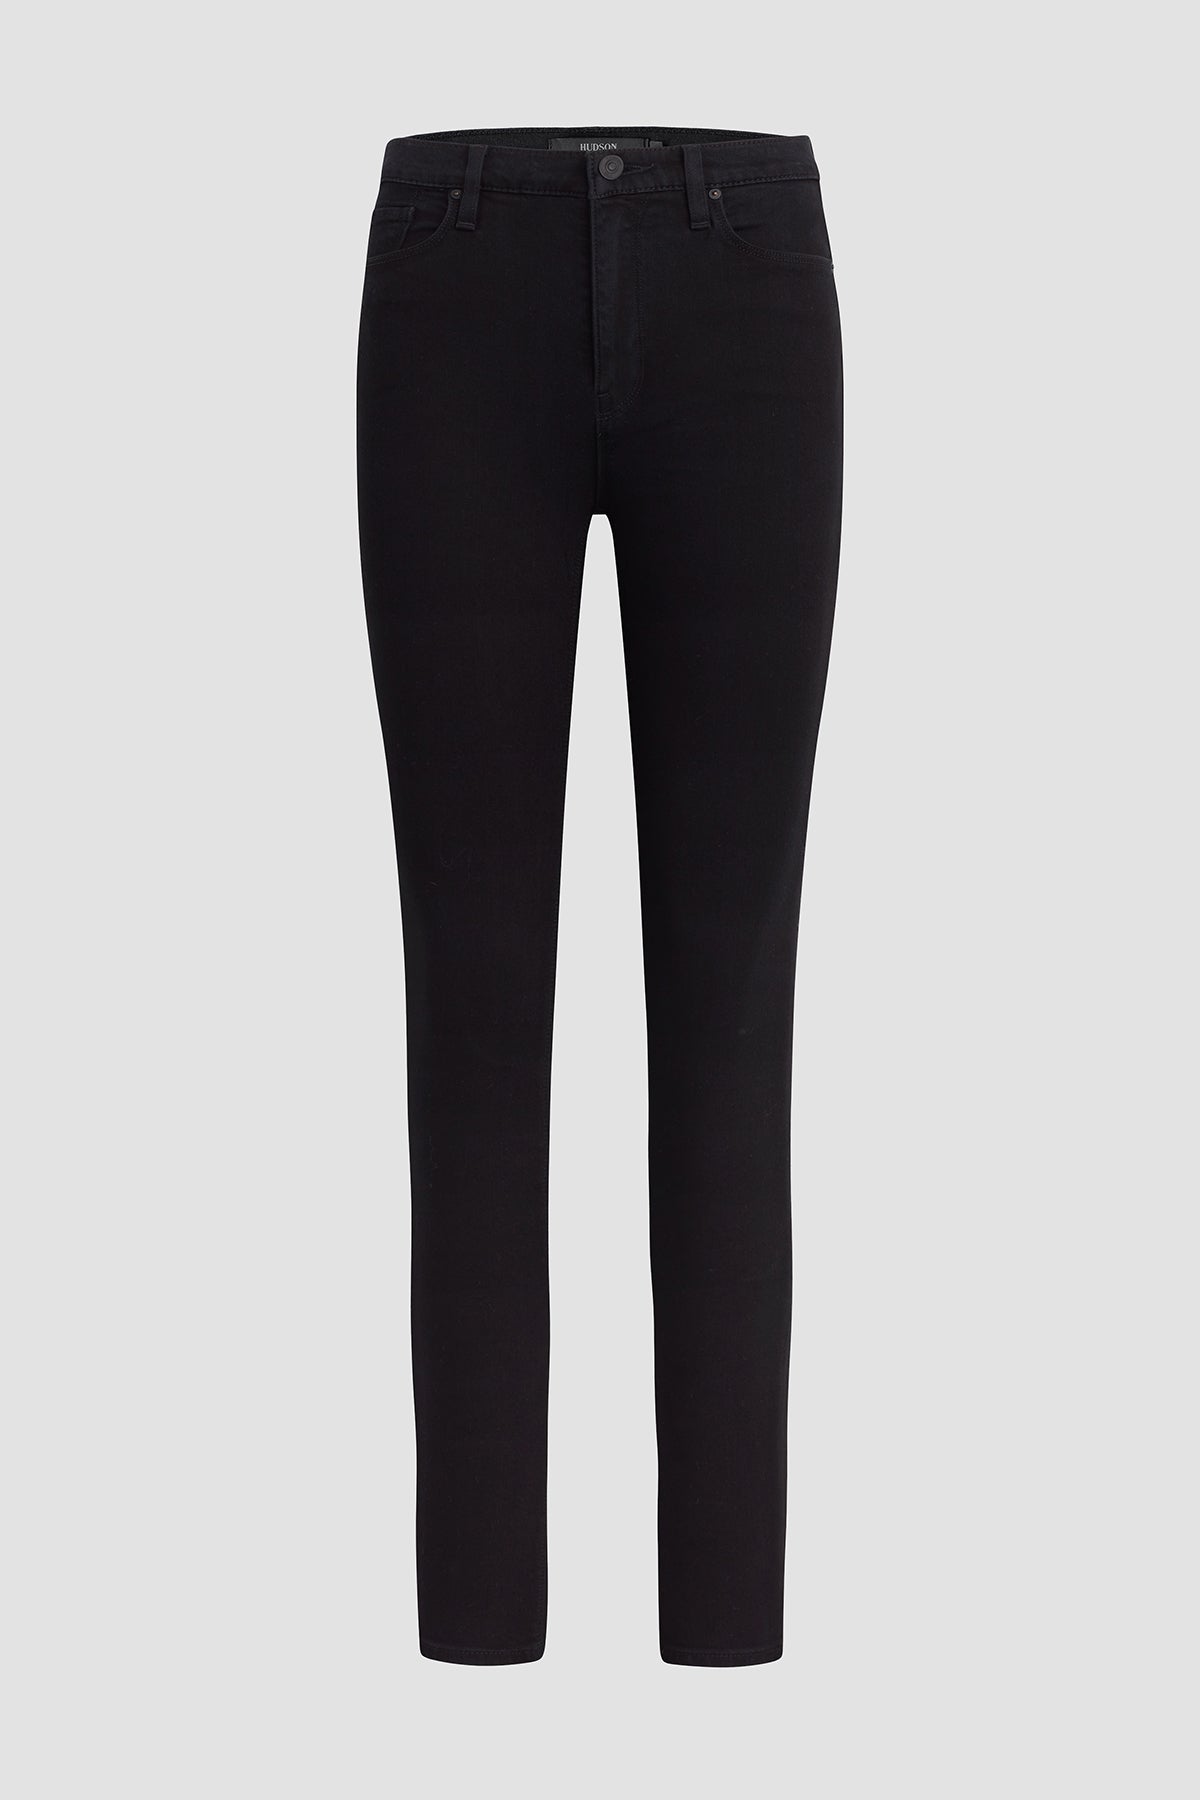 Buy Forever New Women Black Georgia High Waist Full Length Pants - Trousers  for Women 6877490 | Myntra